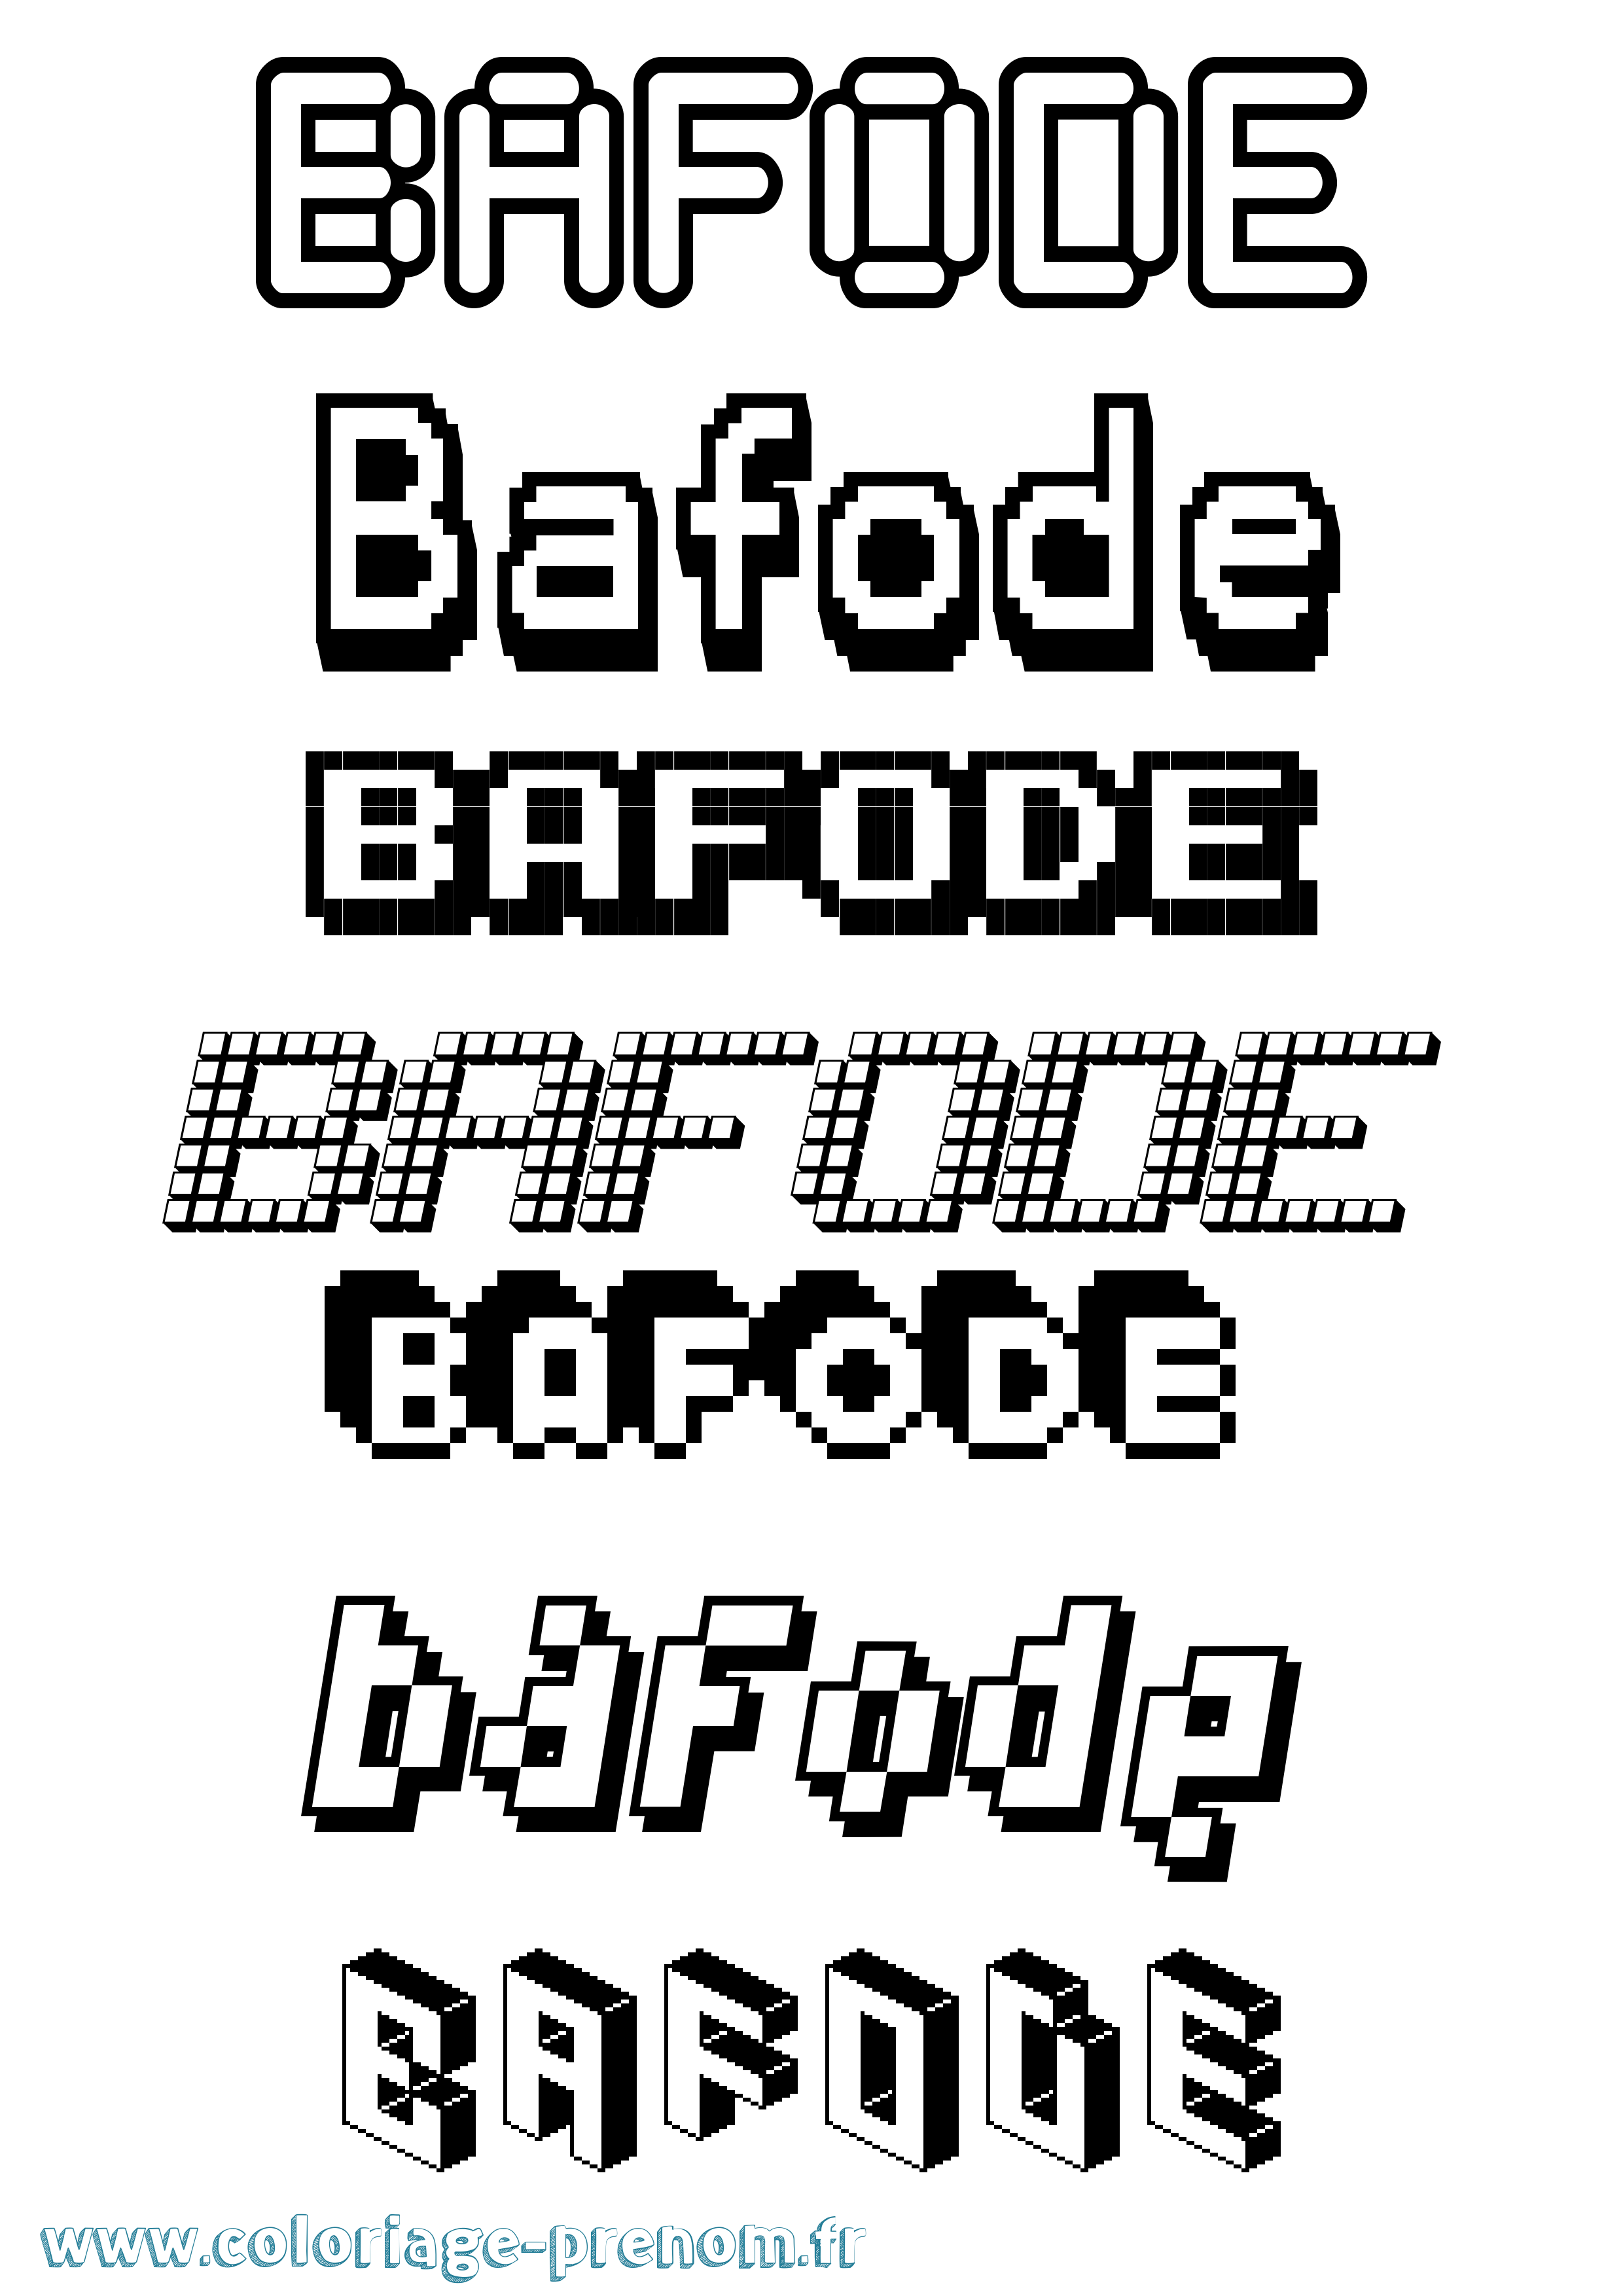 Coloriage prénom Bafode Pixel